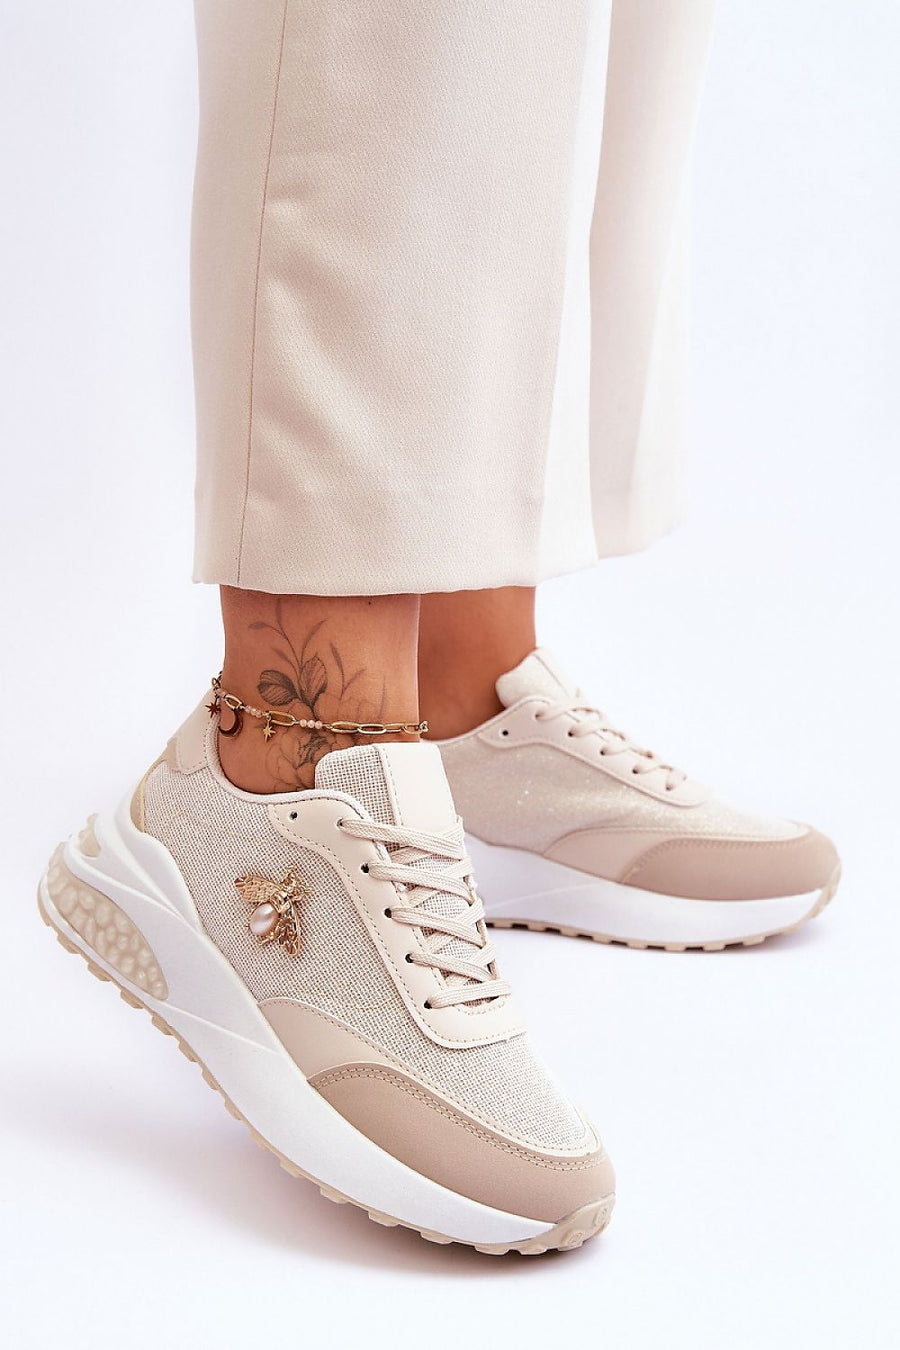 Roze/beige sneakers